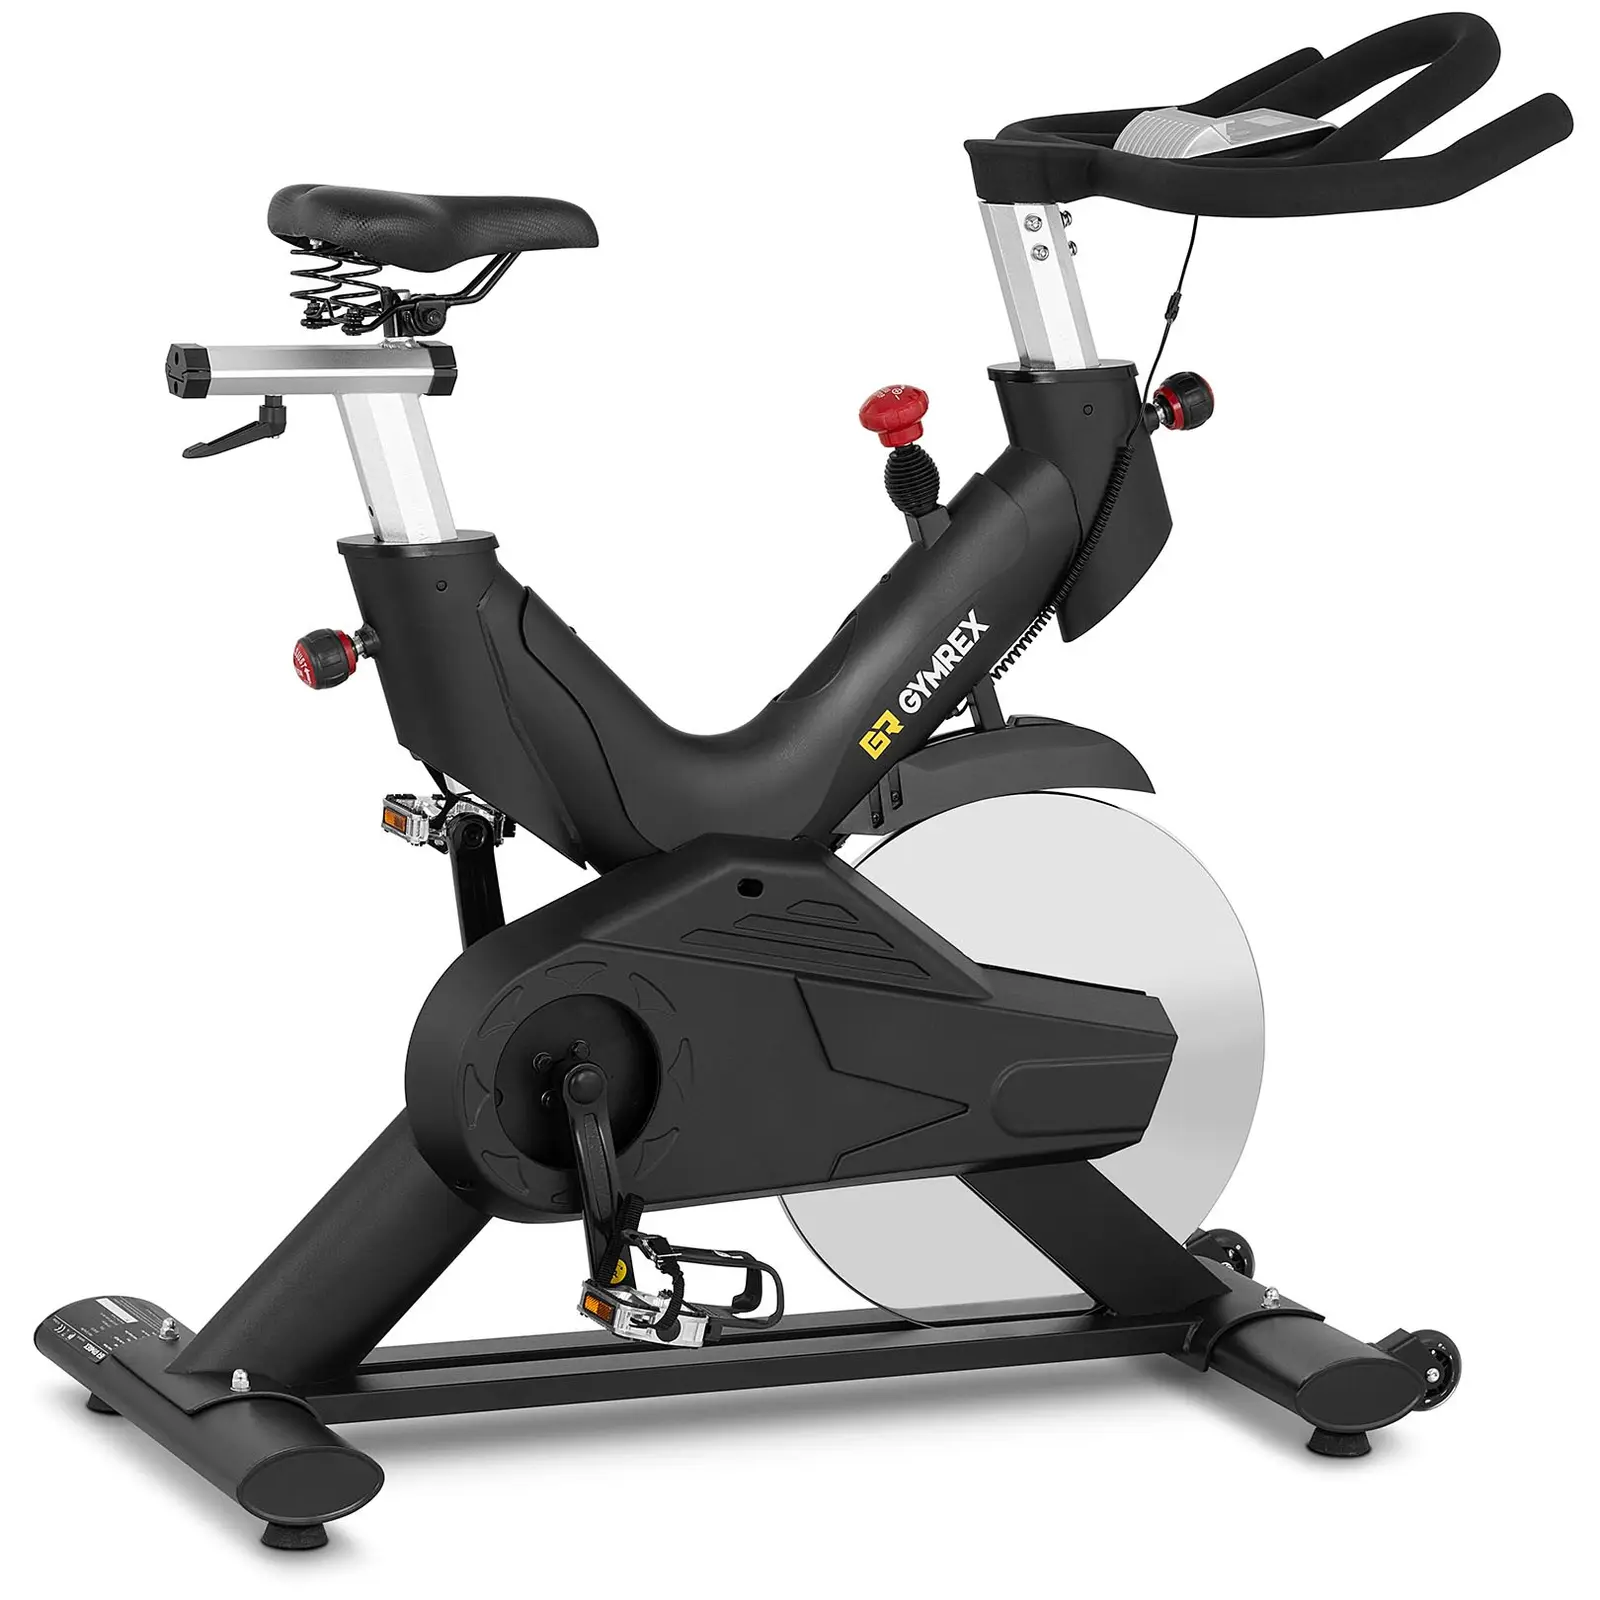 Motionscykel - pedalbelastning 20 kg - LCD